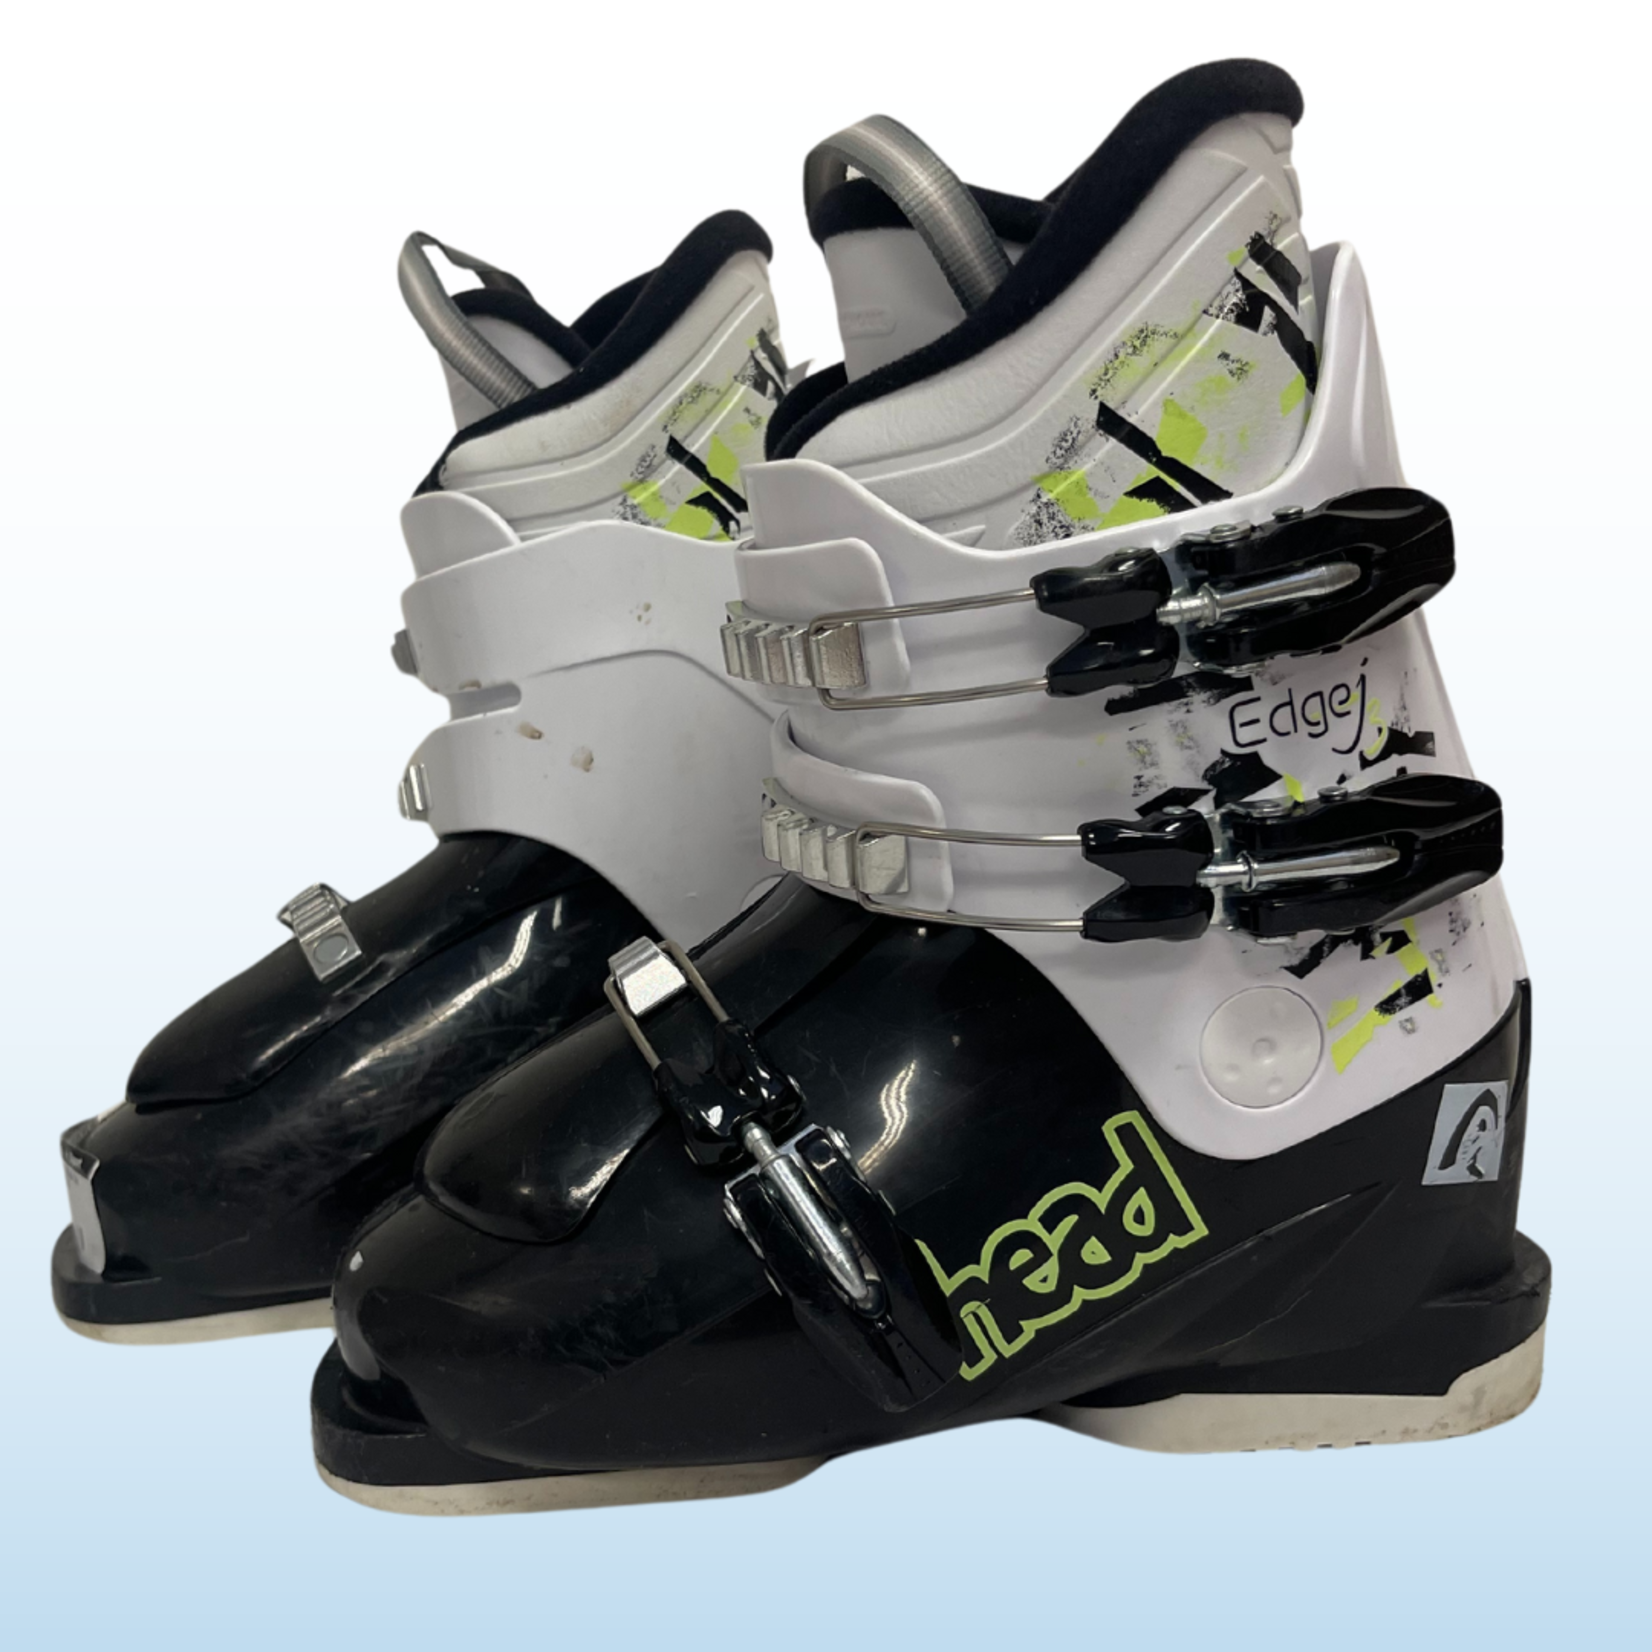 Head Head Edge j3 Kids Ski Boots, Size 23.5